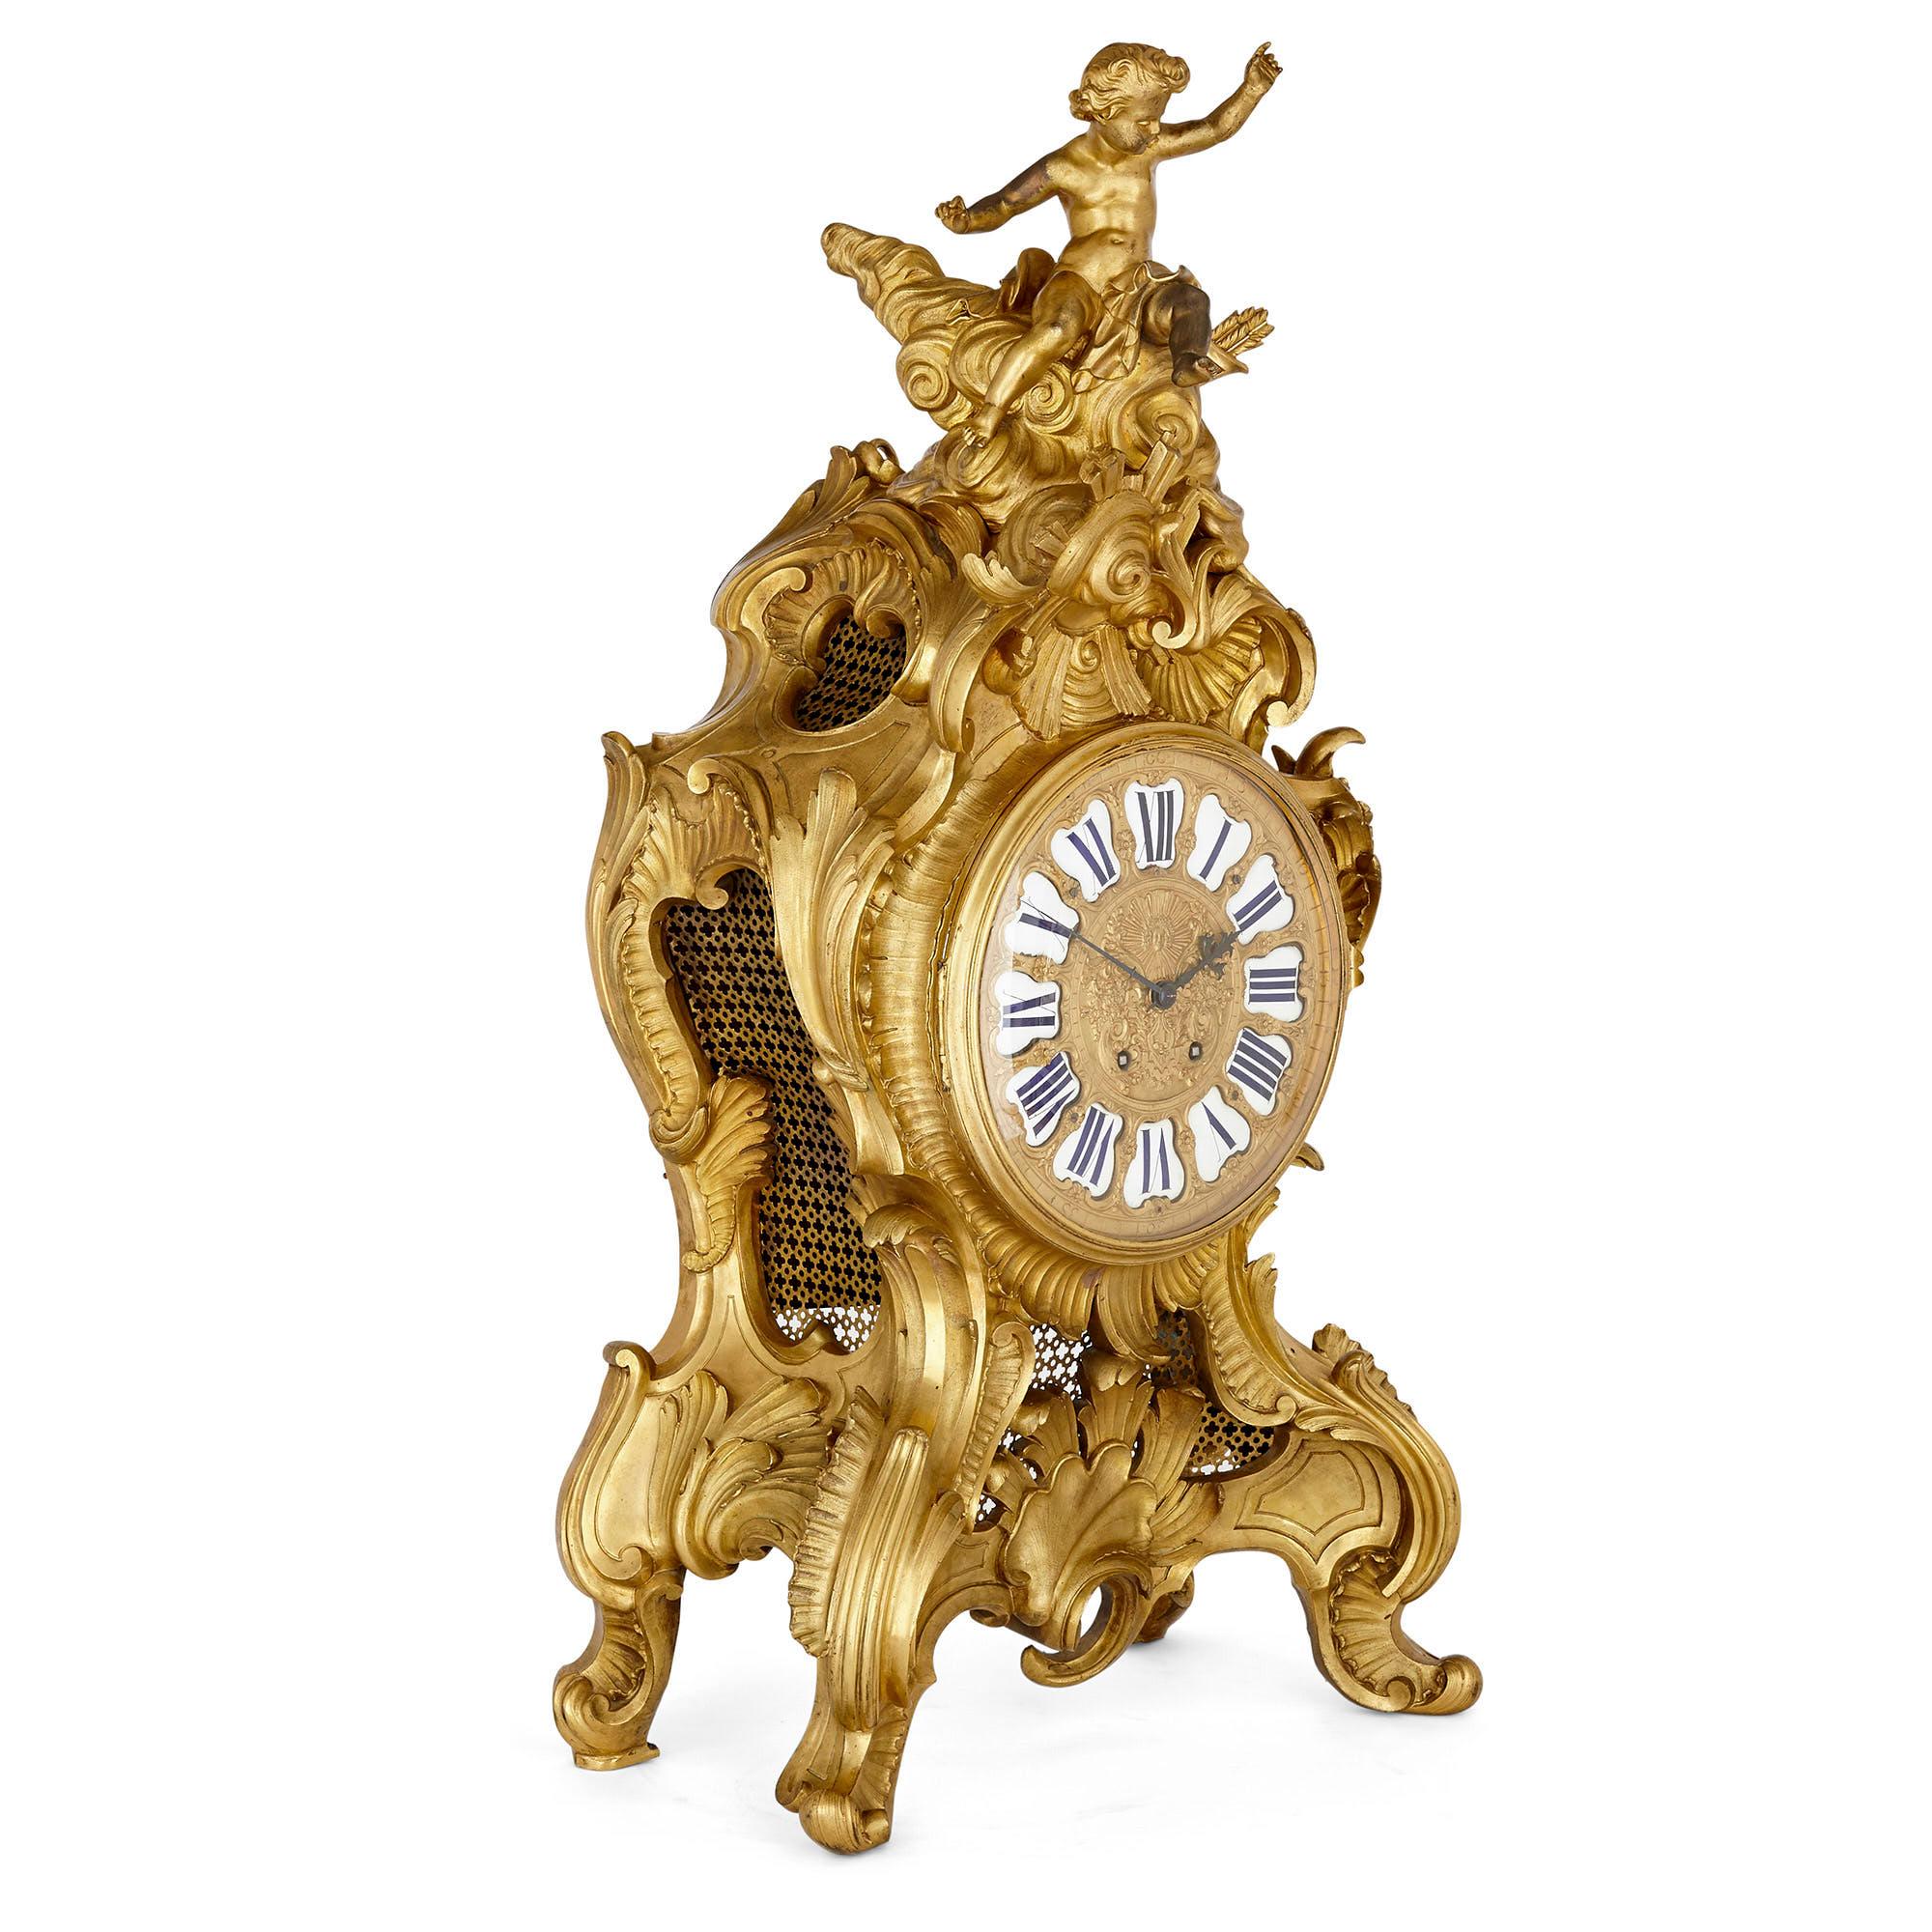 Sehr große französische Kaminsimsuhr im Stil Louis XV aus Ormolu
Französisch, um 1880
Maße: Höhe 98cm, Breite 50cm, Tiefe 27cm

Diese schöne Uhr aus dem 19. Jahrhundert ist mit einer Höhe von 98 cm ungewöhnlich groß und vermittelt ein